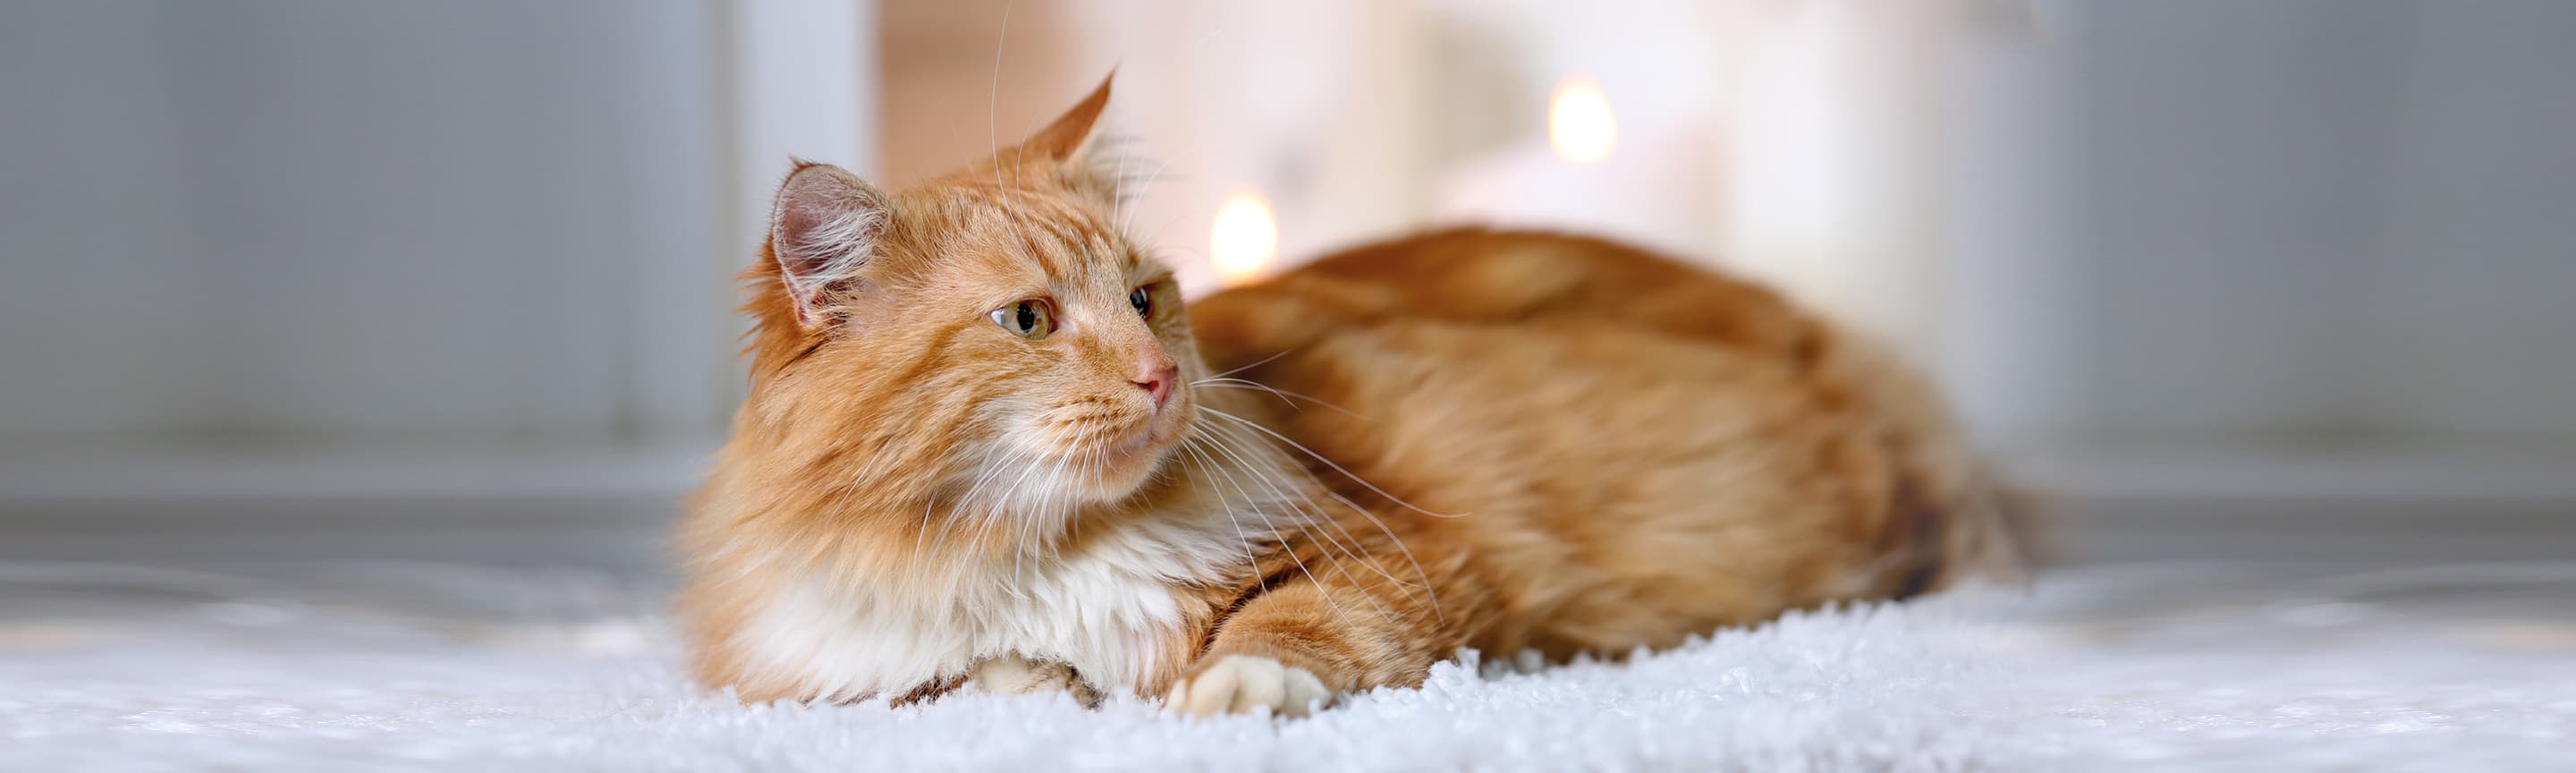 Нужно ли делать прививки котам, живущим дома?